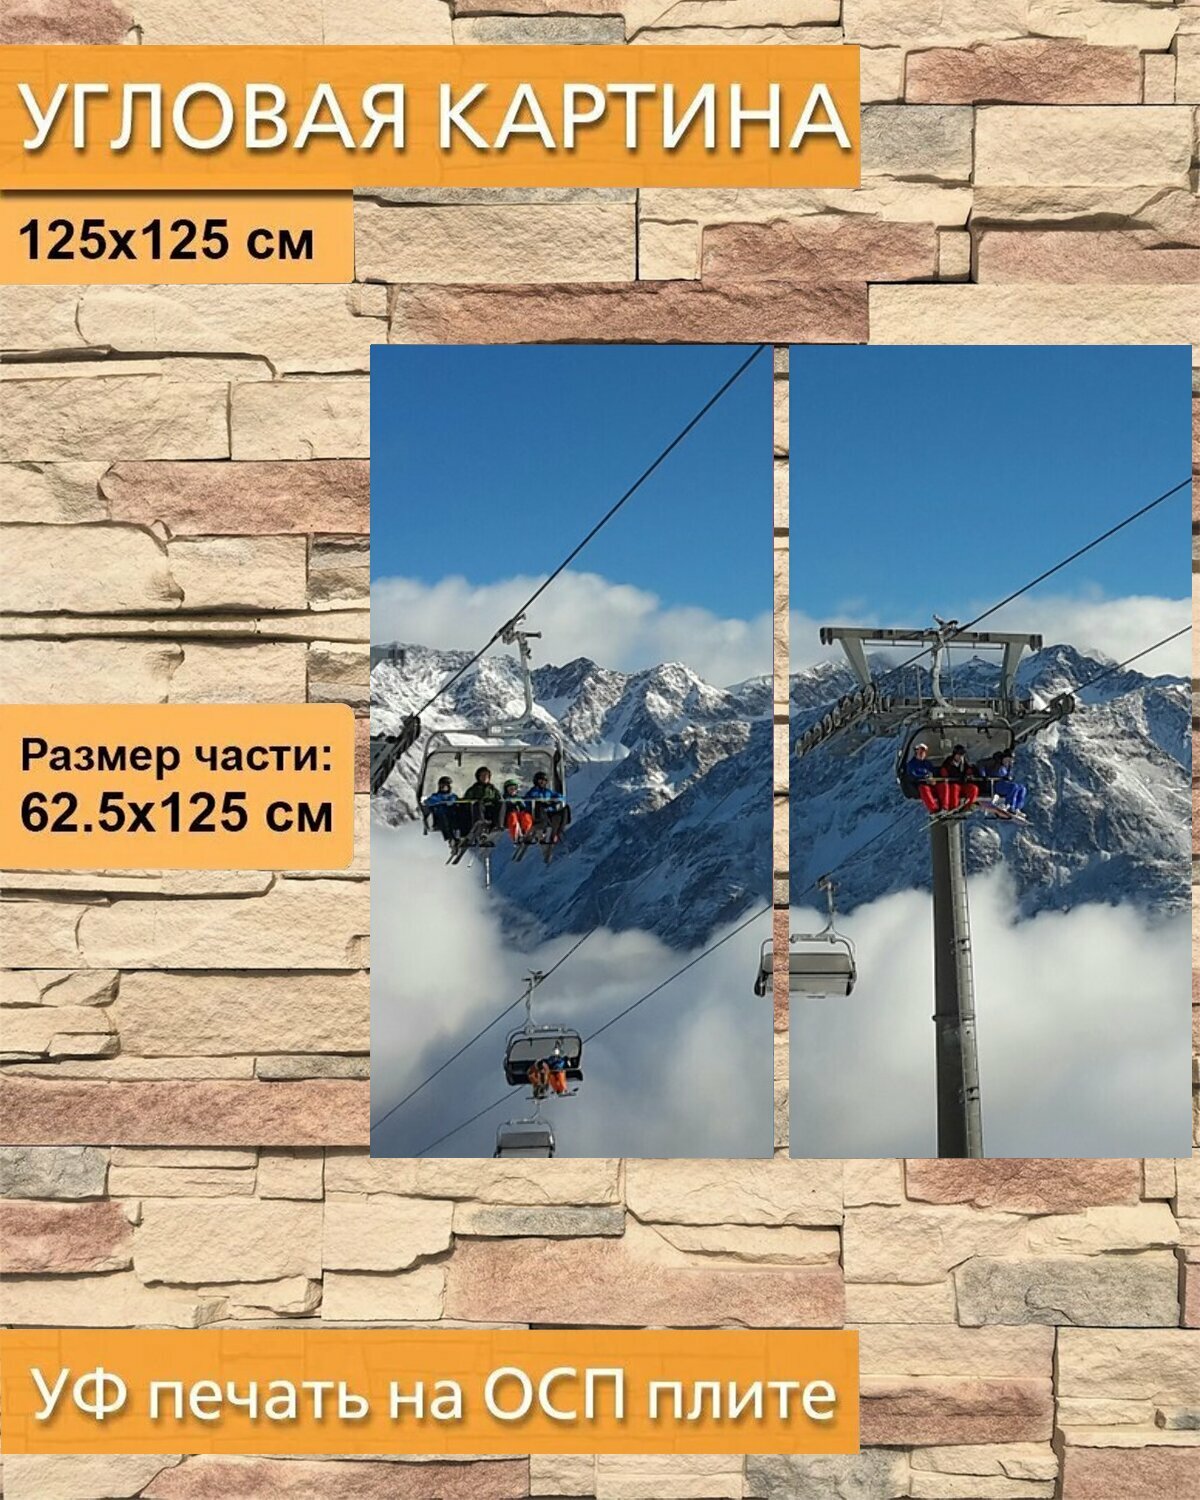 Модульная картина на ОСП "Альпы, лыжная зона, кресельная канатная дорога" 125x125 см. 2 части для интерьера на стену